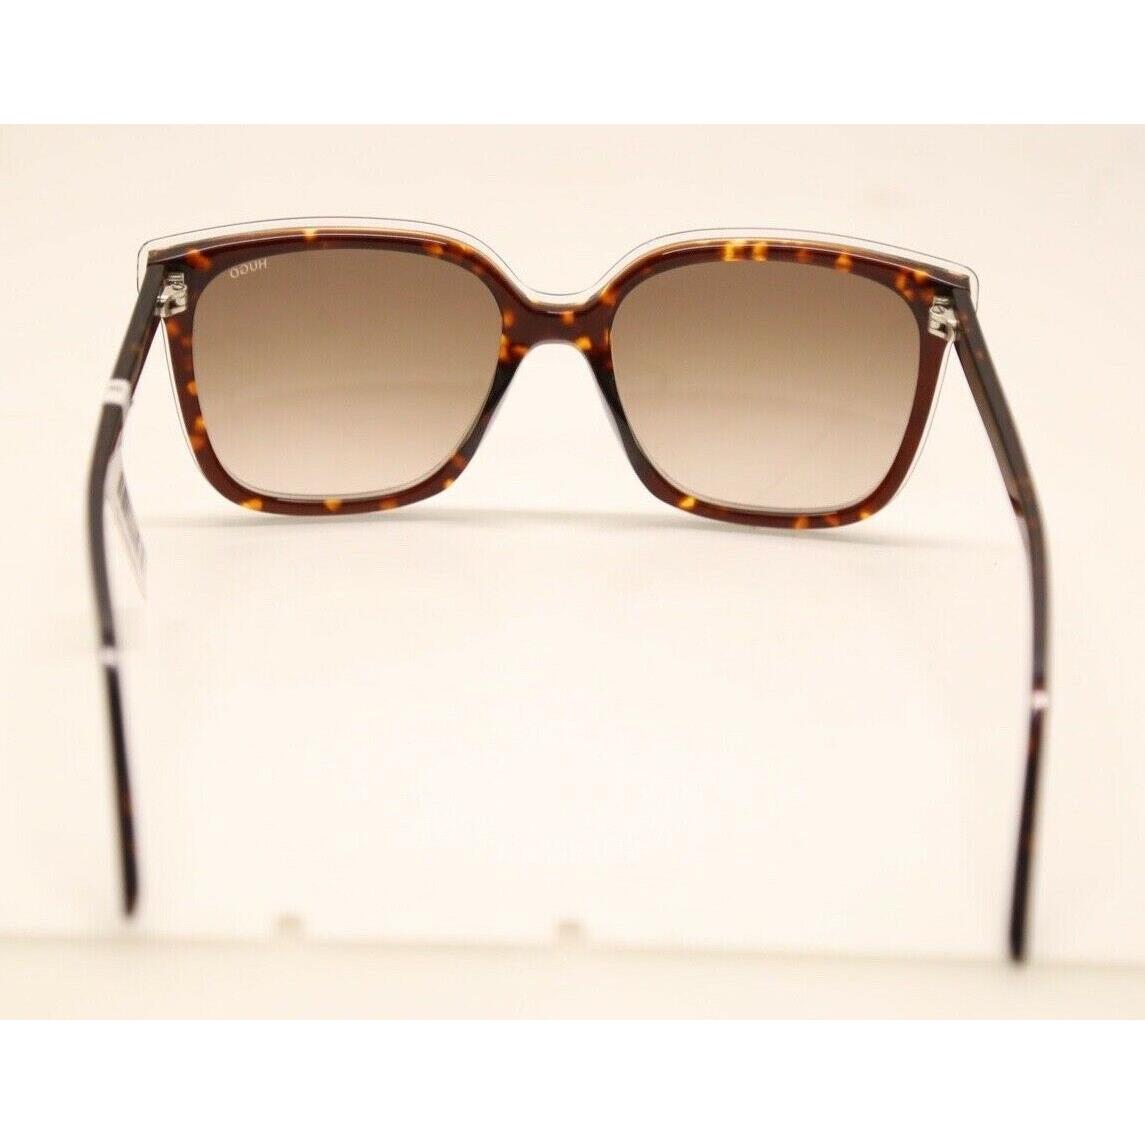 Hugo Boss sunglasses  - Brown Havana Frame, Brown Lens 2